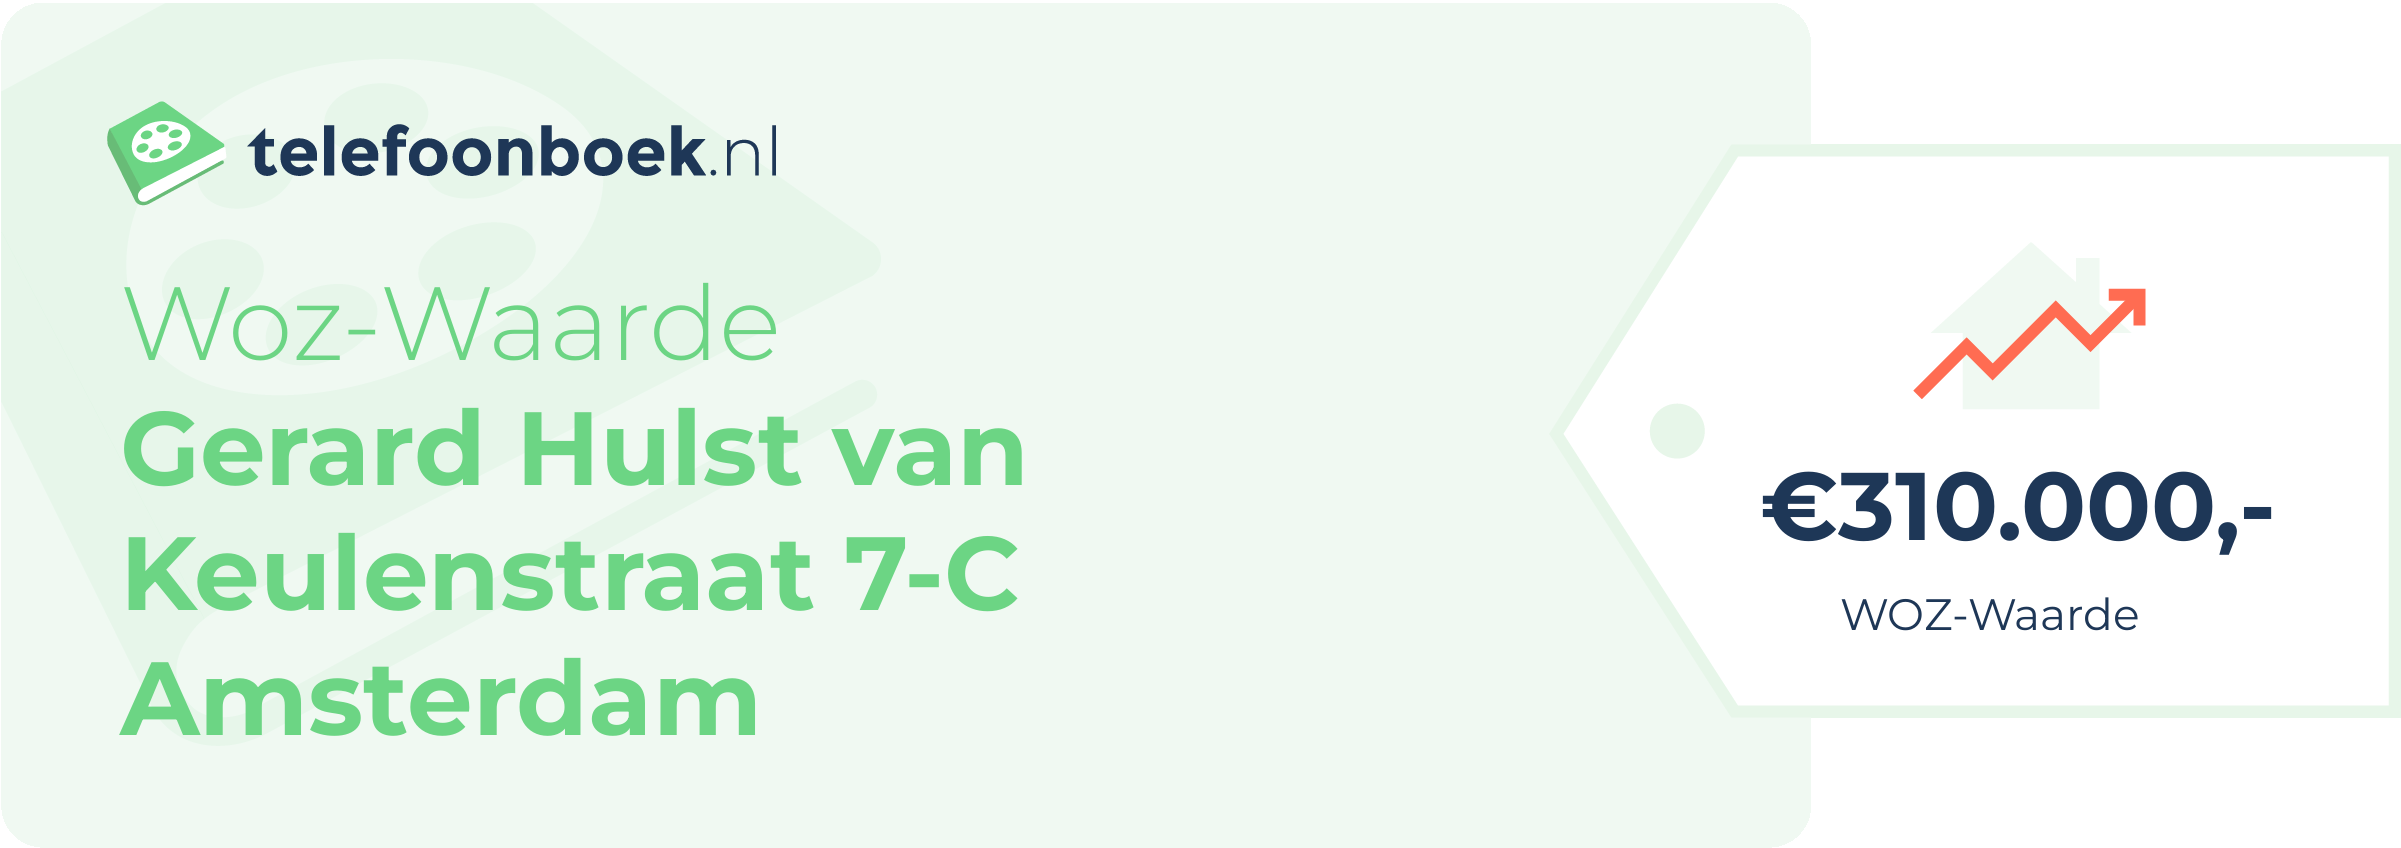 WOZ-waarde Gerard Hulst Van Keulenstraat 7-C Amsterdam